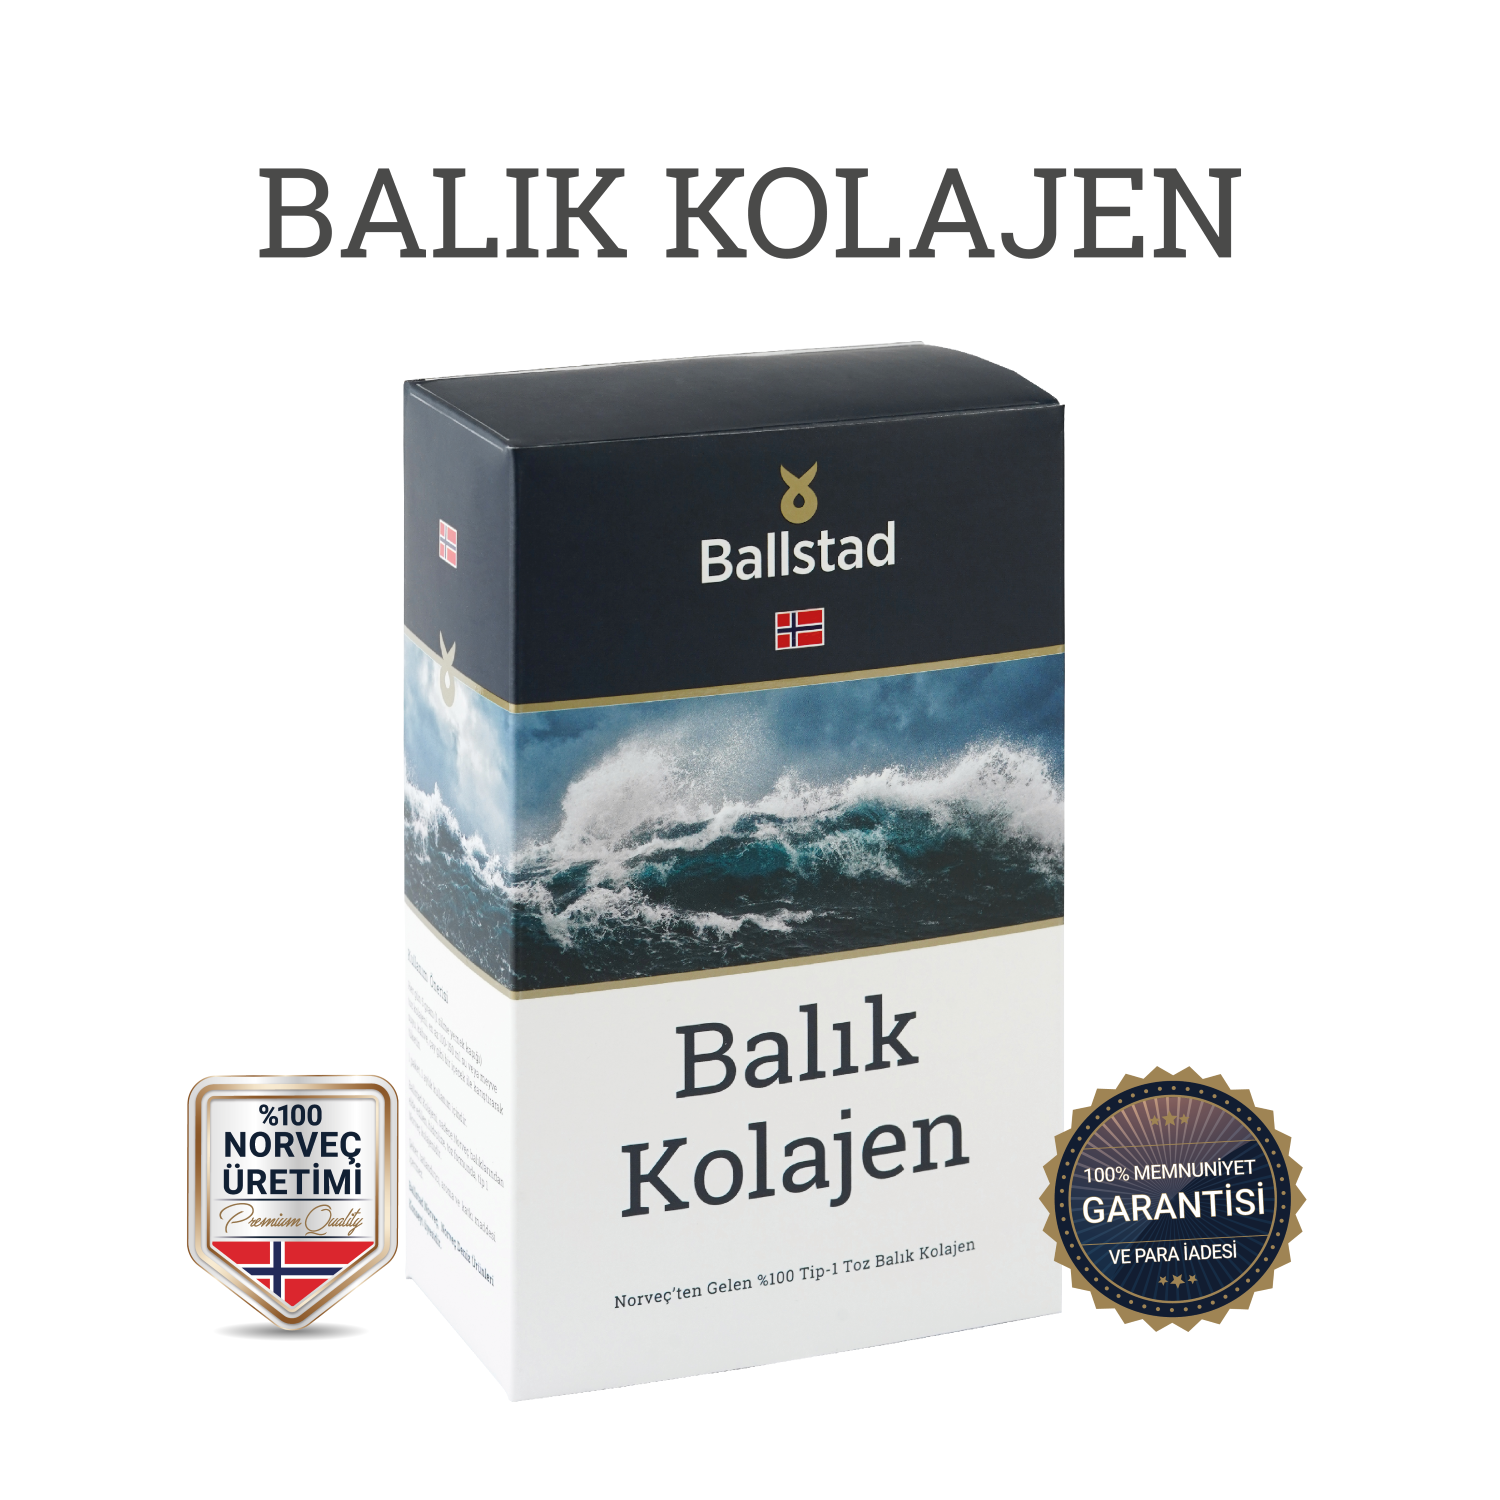 Onaylı Satış Noktaları – Ballstad Türkiye